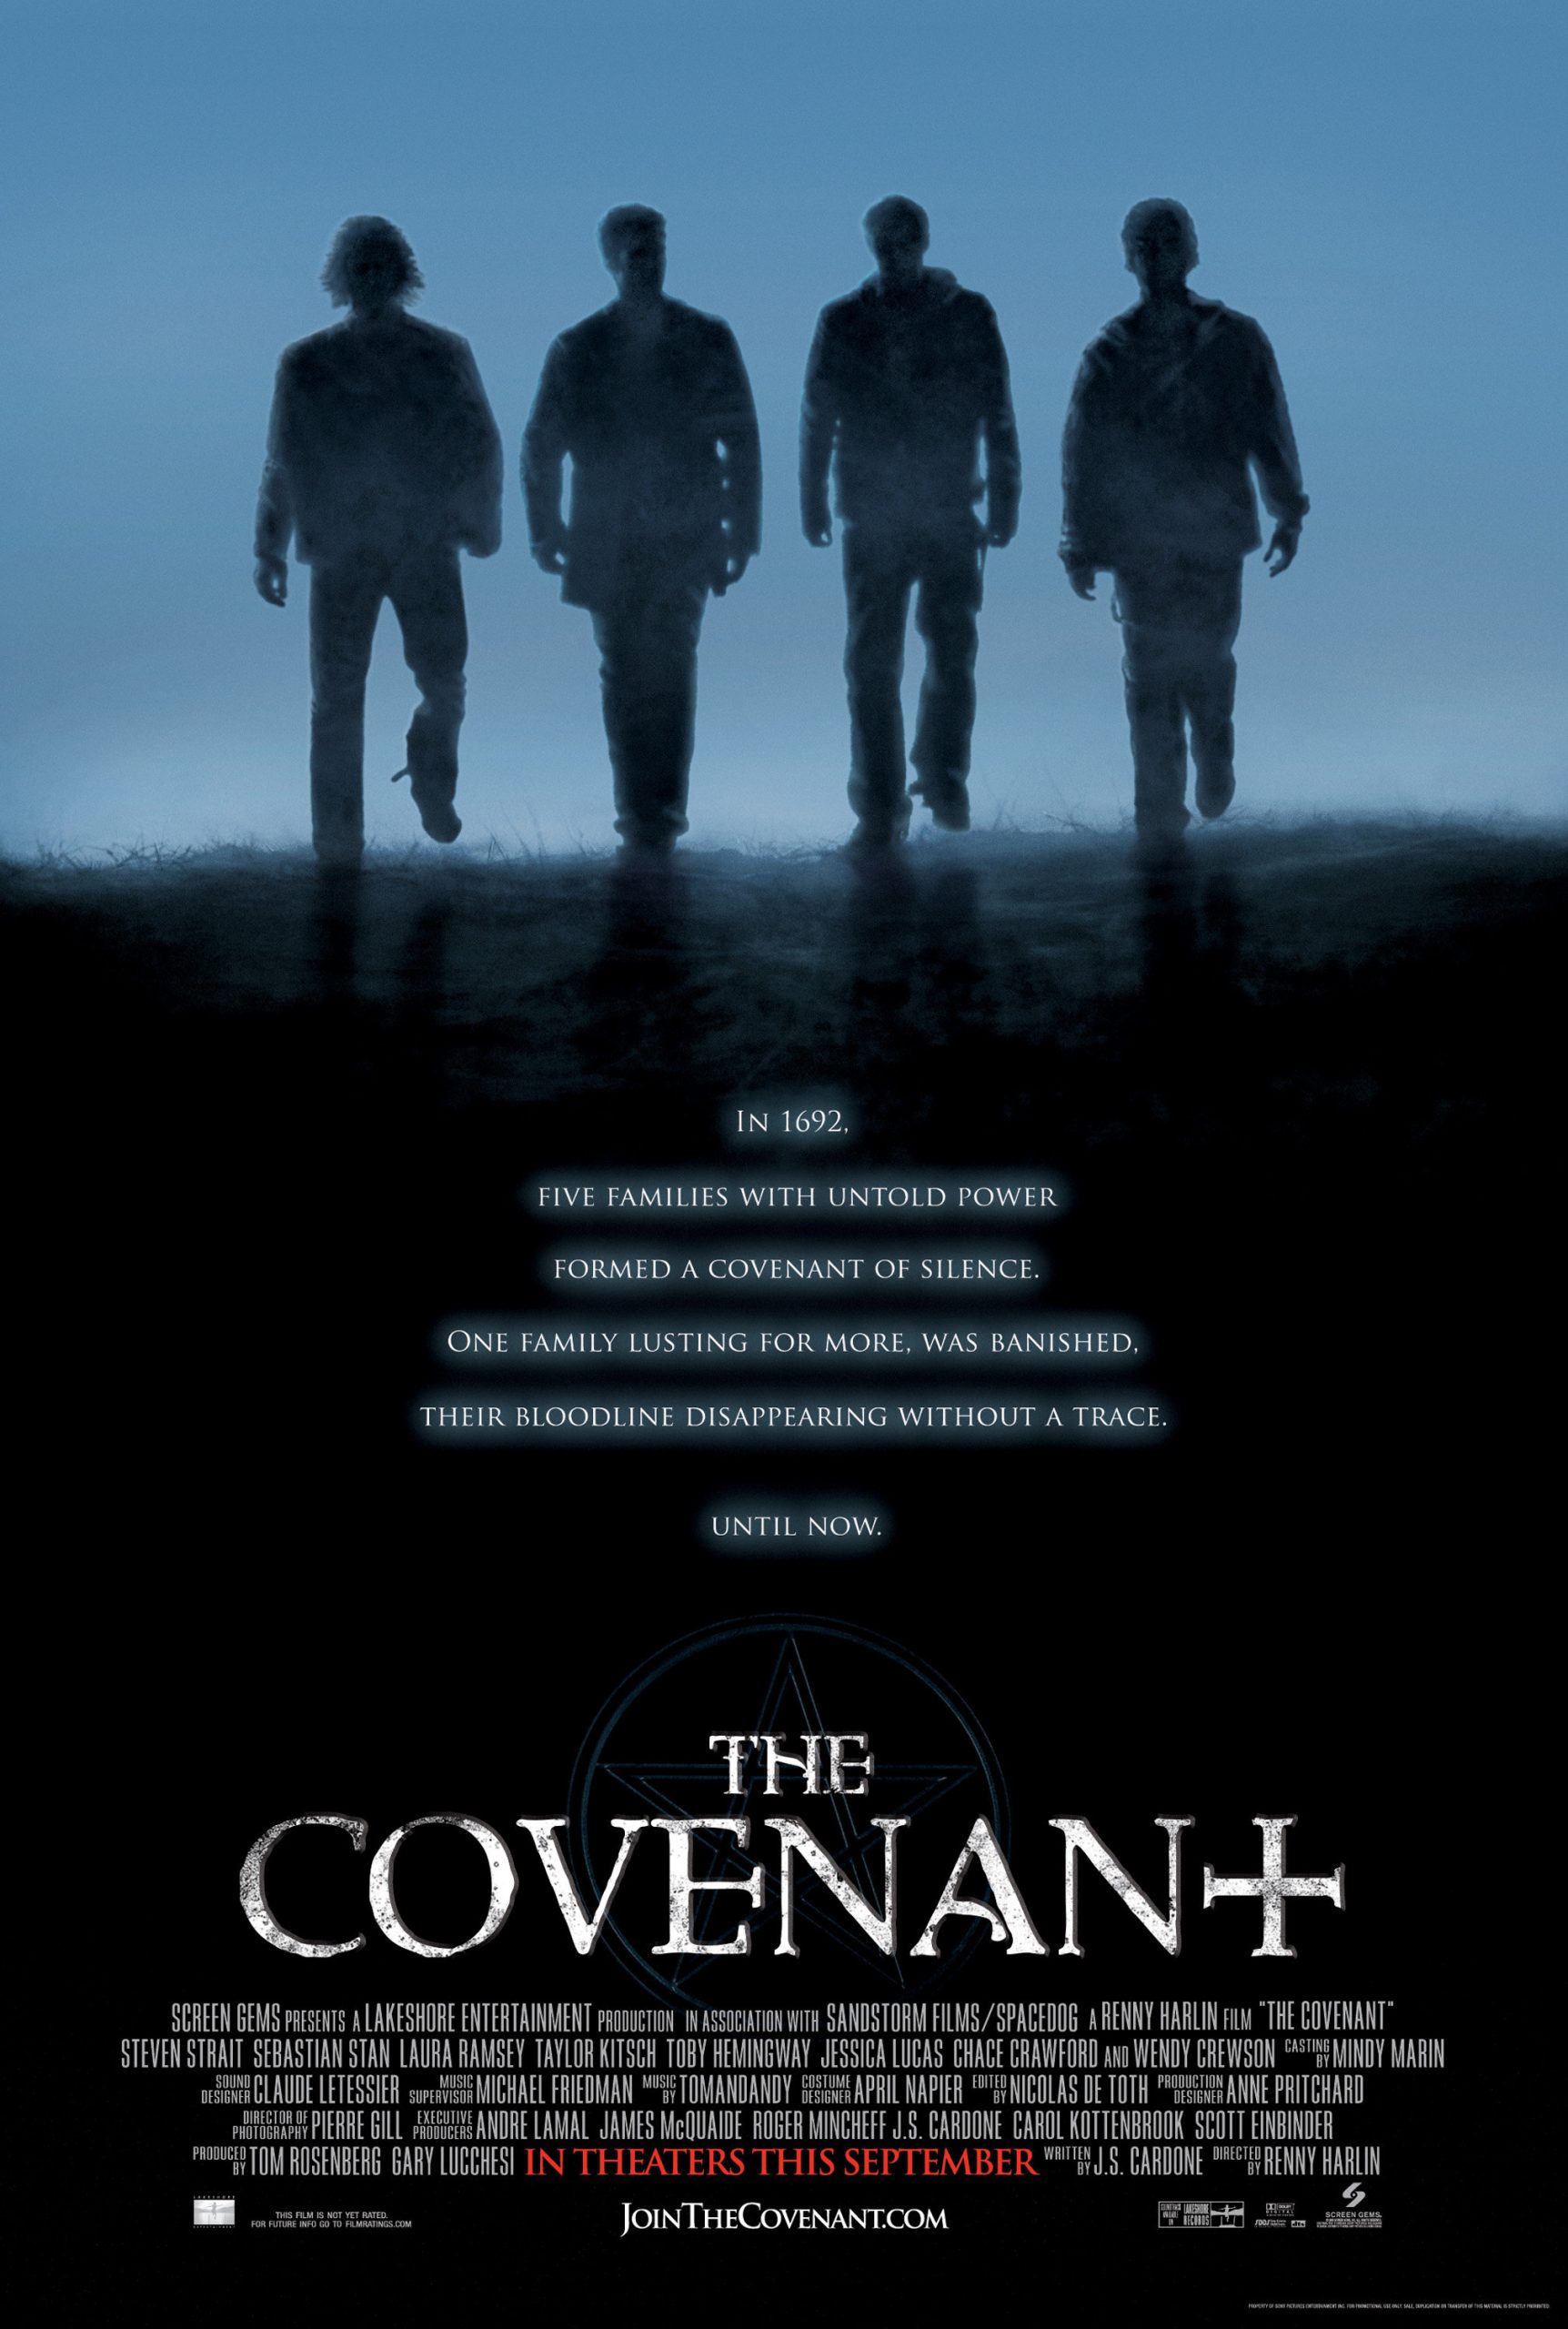 ดูหนังออนไลน์ฟรี The Covenant (2006) สี่พลังมนต์ล้างโลก หนังเต็มเรื่อง หนังมาสเตอร์ ดูหนังHD ดูหนังออนไลน์ ดูหนังใหม่